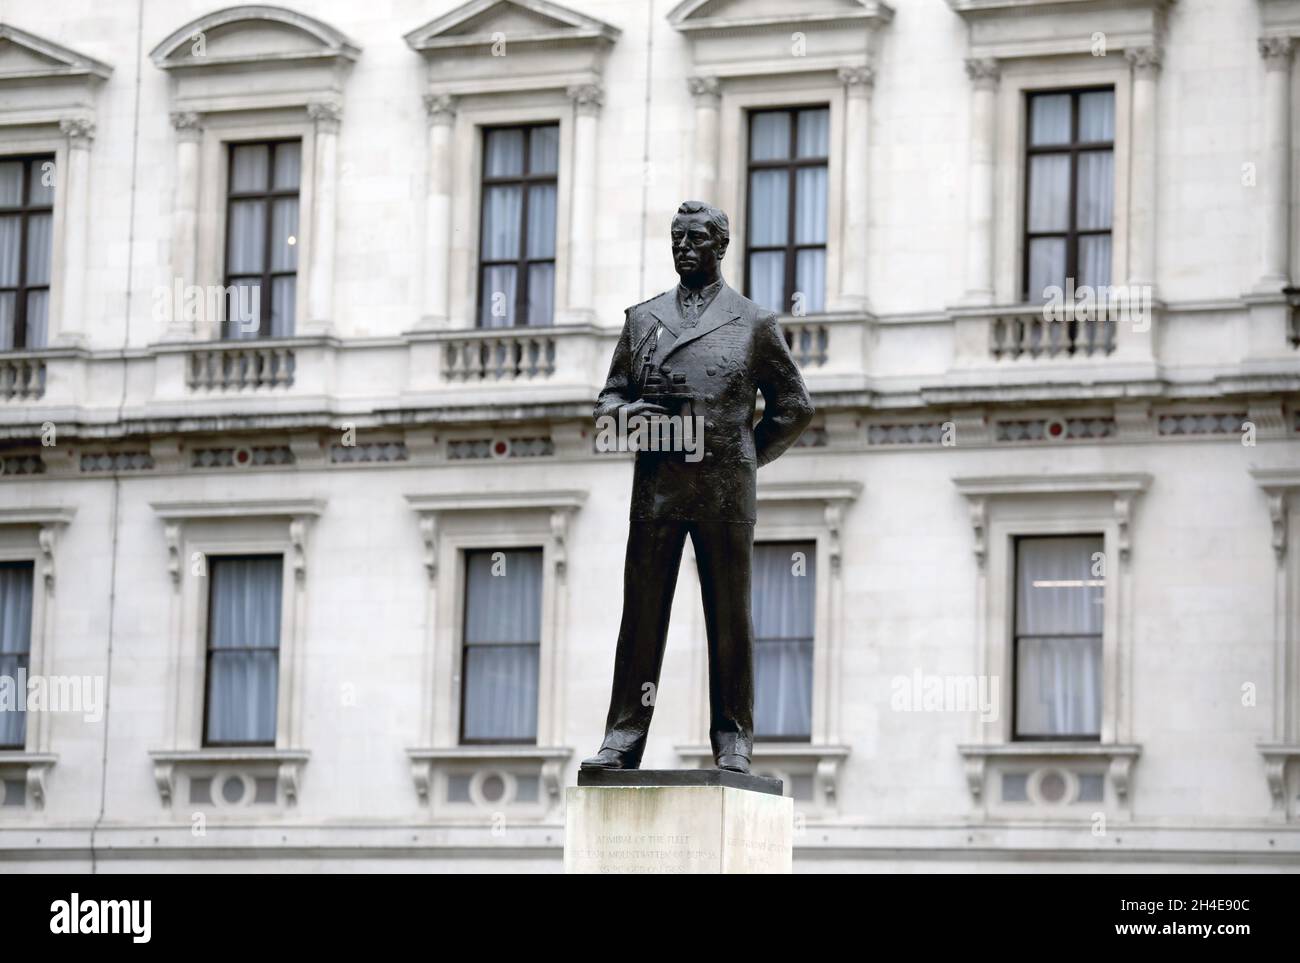 Eine Statue des Earl Mountbatten in der House Guards Road, eine Statue auf einer Liste von Statuen, die von Black Lives Matter entfernt werden sollten, nachdem das Bristol-Denkmal für Edward Colston gestürzt und in den Hafen geworfen wurde. Bilddatum: Donnerstag, 11. Juni 2020. Stockfoto